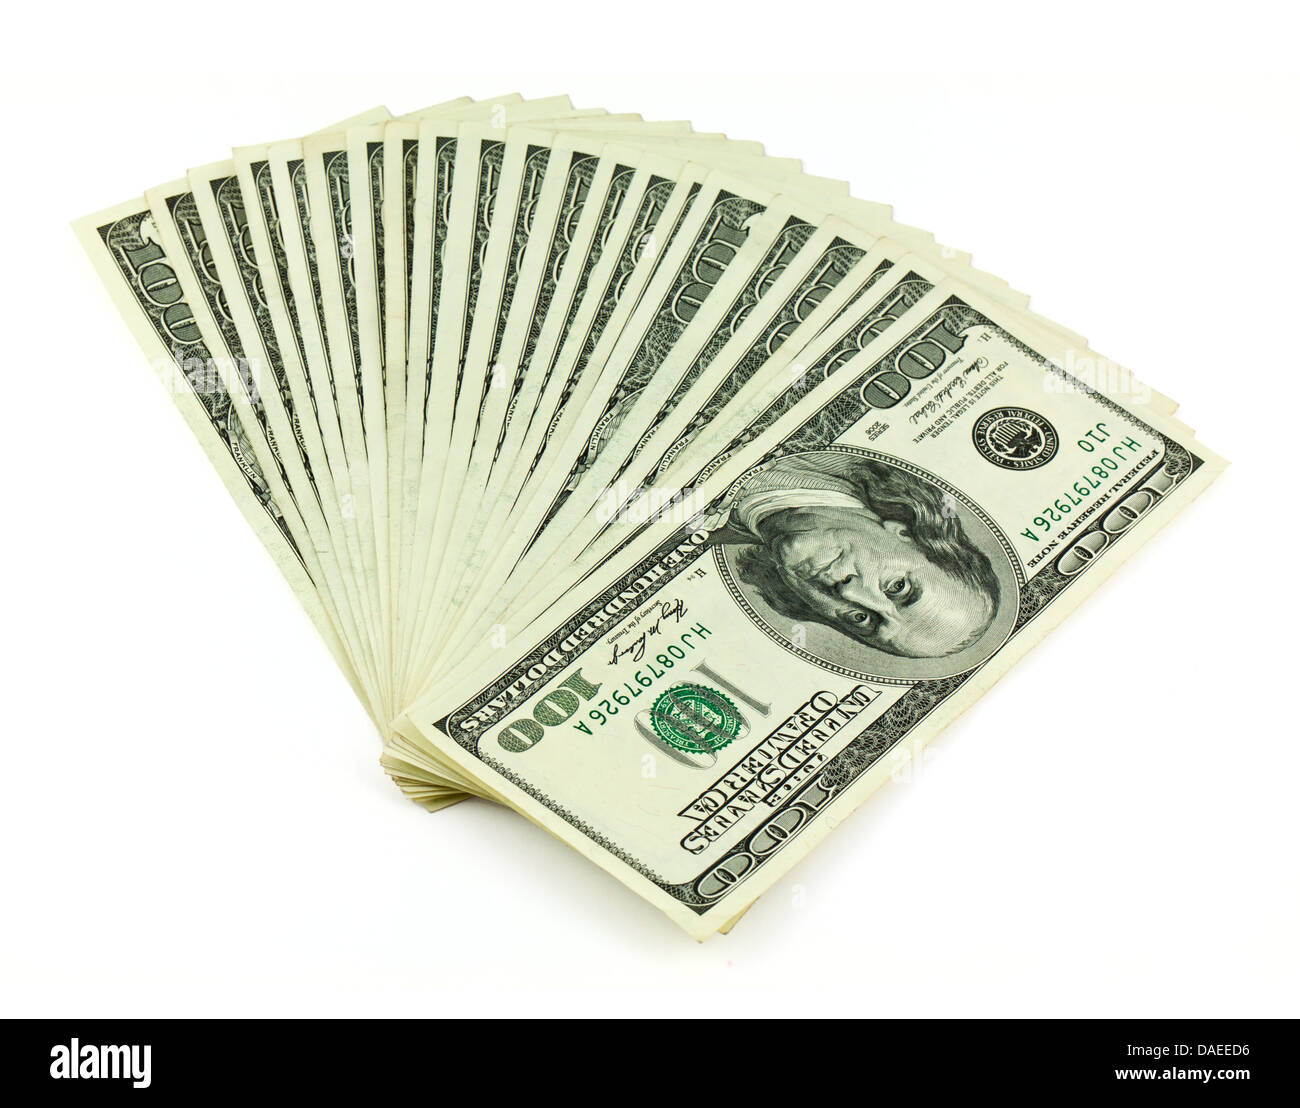 US dollars isolated on white Stock Photo